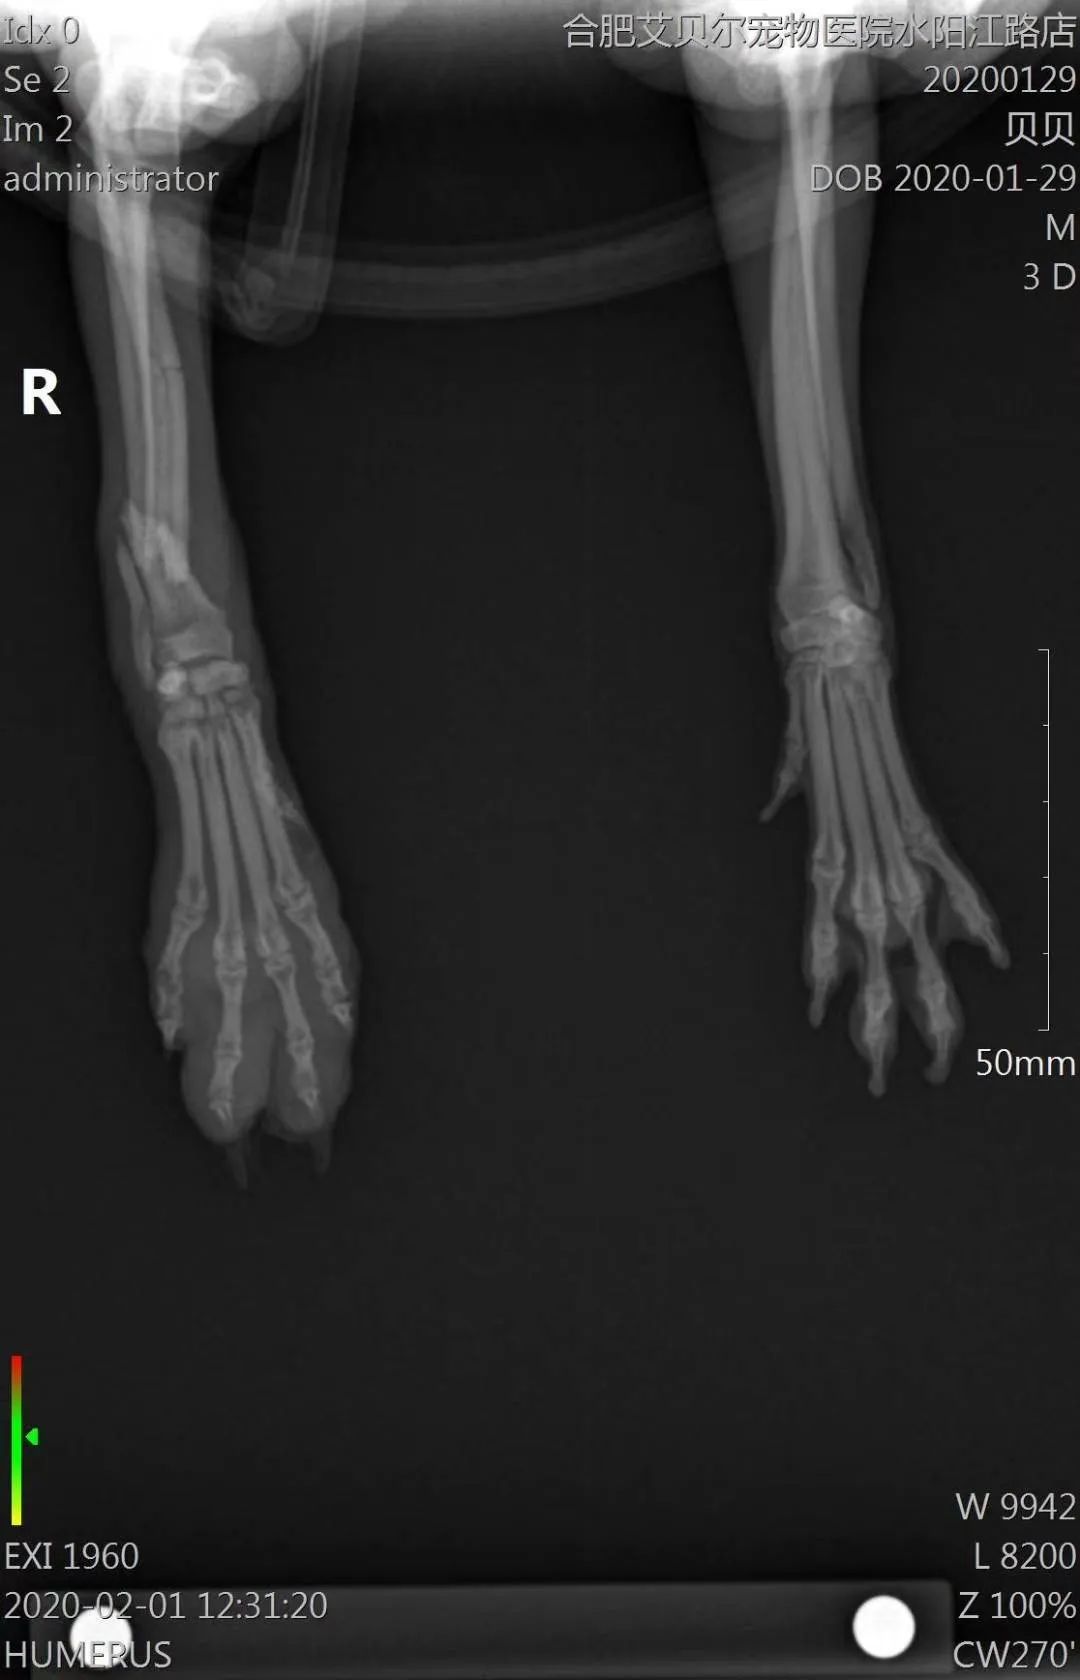 【病例分享】博美犬桡尺骨骨折,prcl锁定骨板系统临床病例分享!